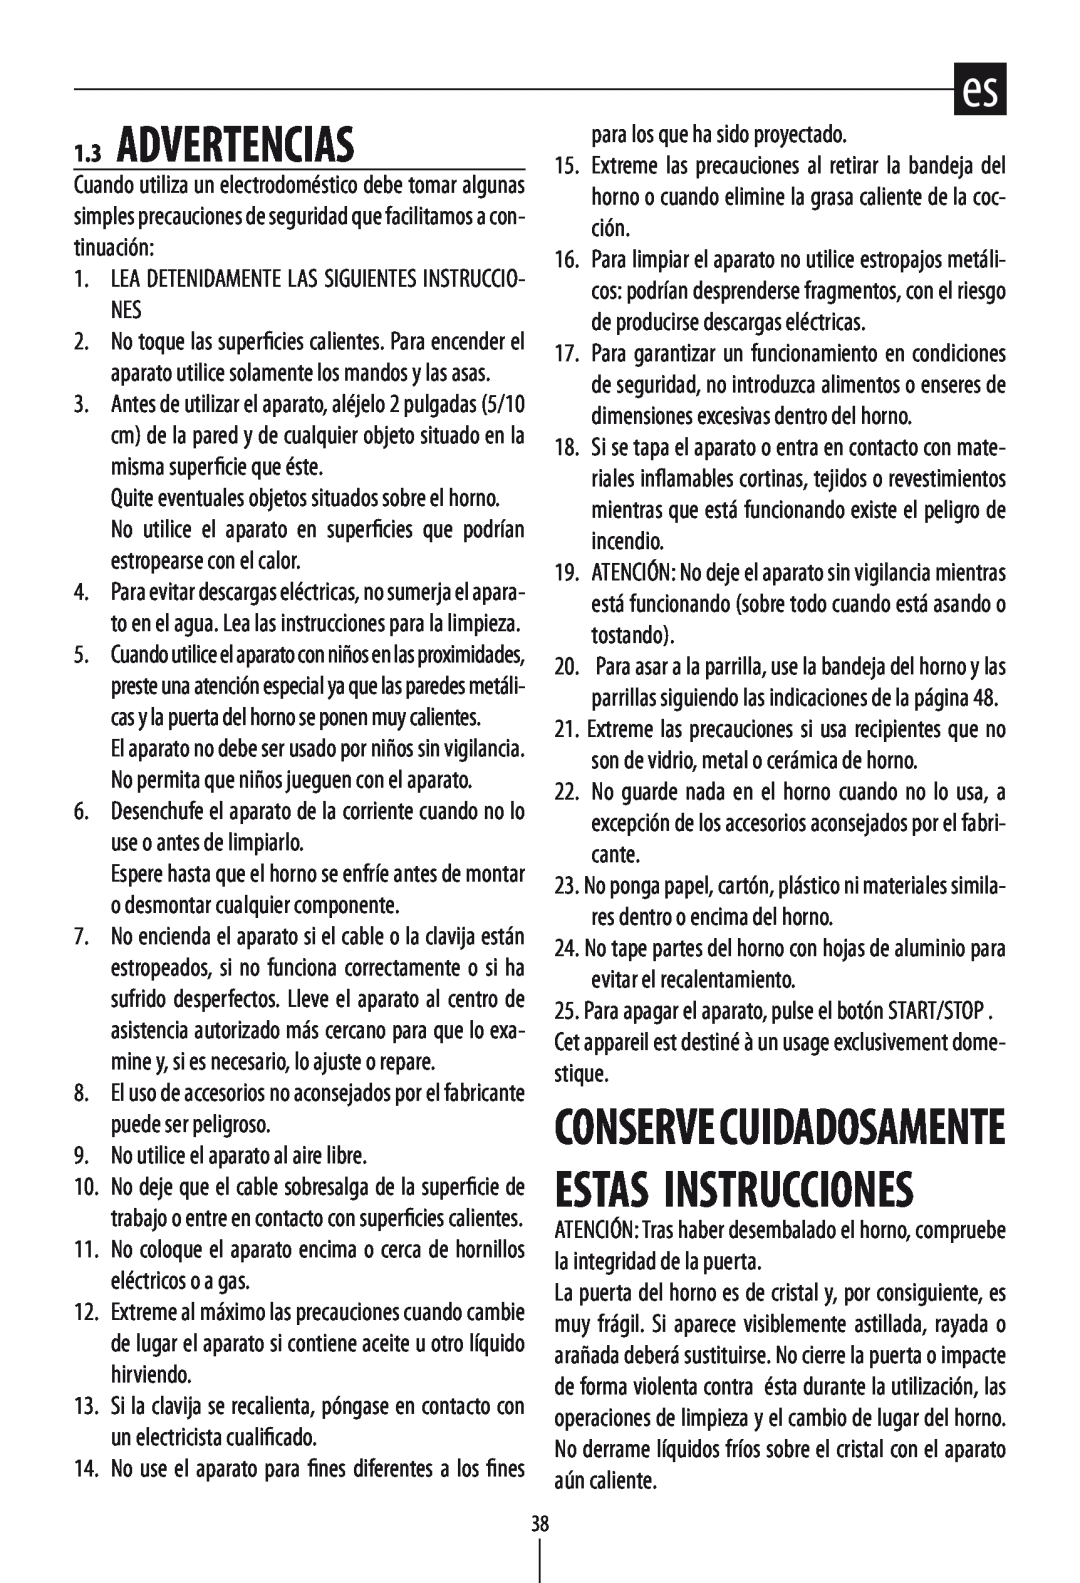 DeLonghi DO1289 manual 1.3ADVERTENCIAS, Conserve Cuidadosamente Estas Instrucciones 